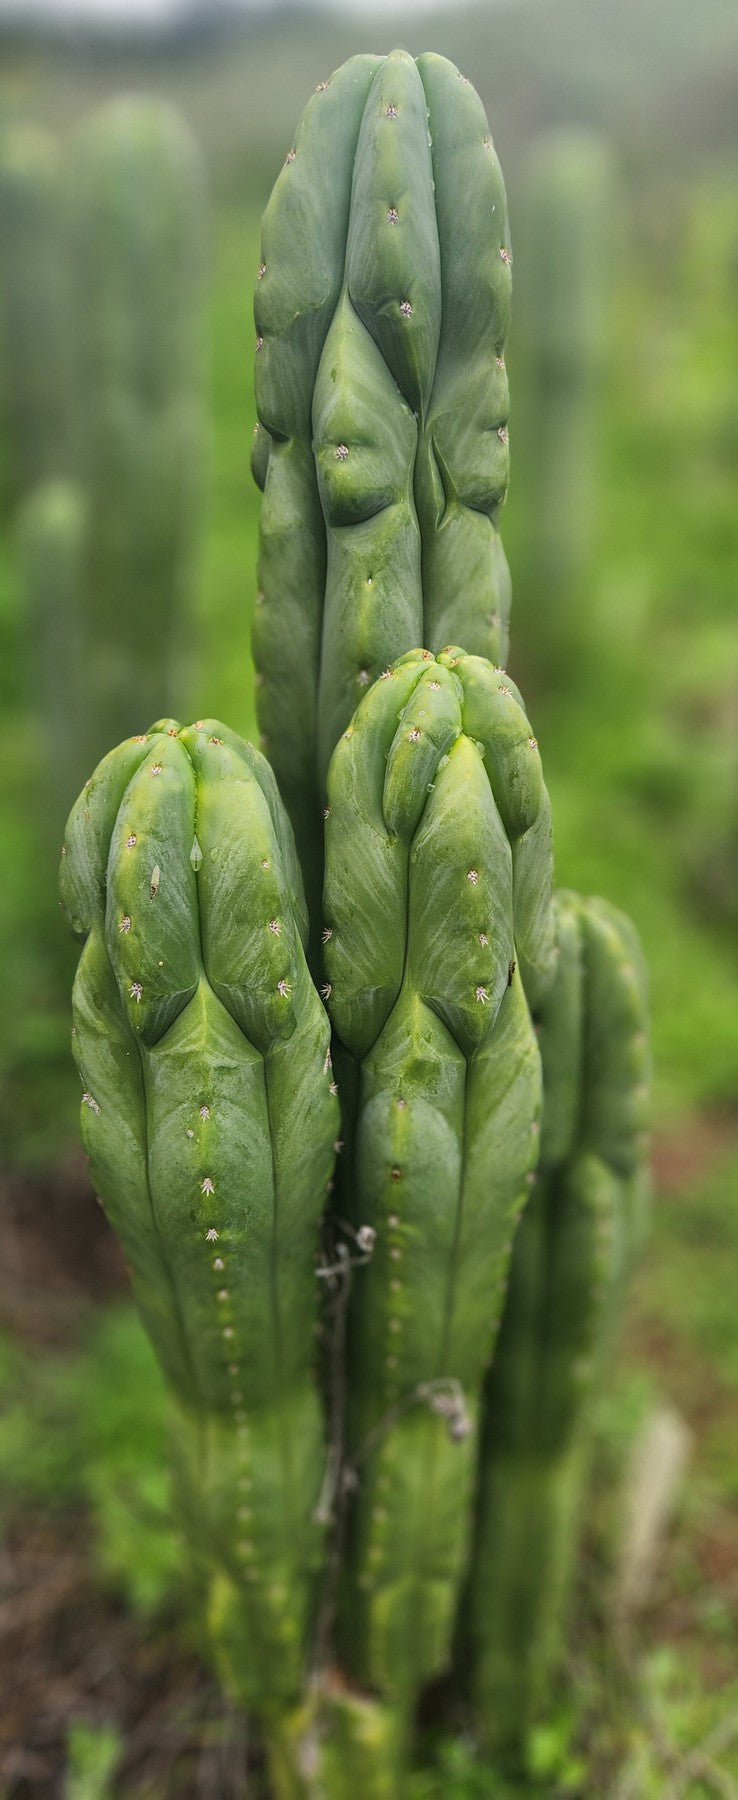 #EC333 EXACT Trichocereus Pachanoi Olivia X Scopulicola Cactus Cutting 10"-Cactus - Large - Exact-The Succulent Source